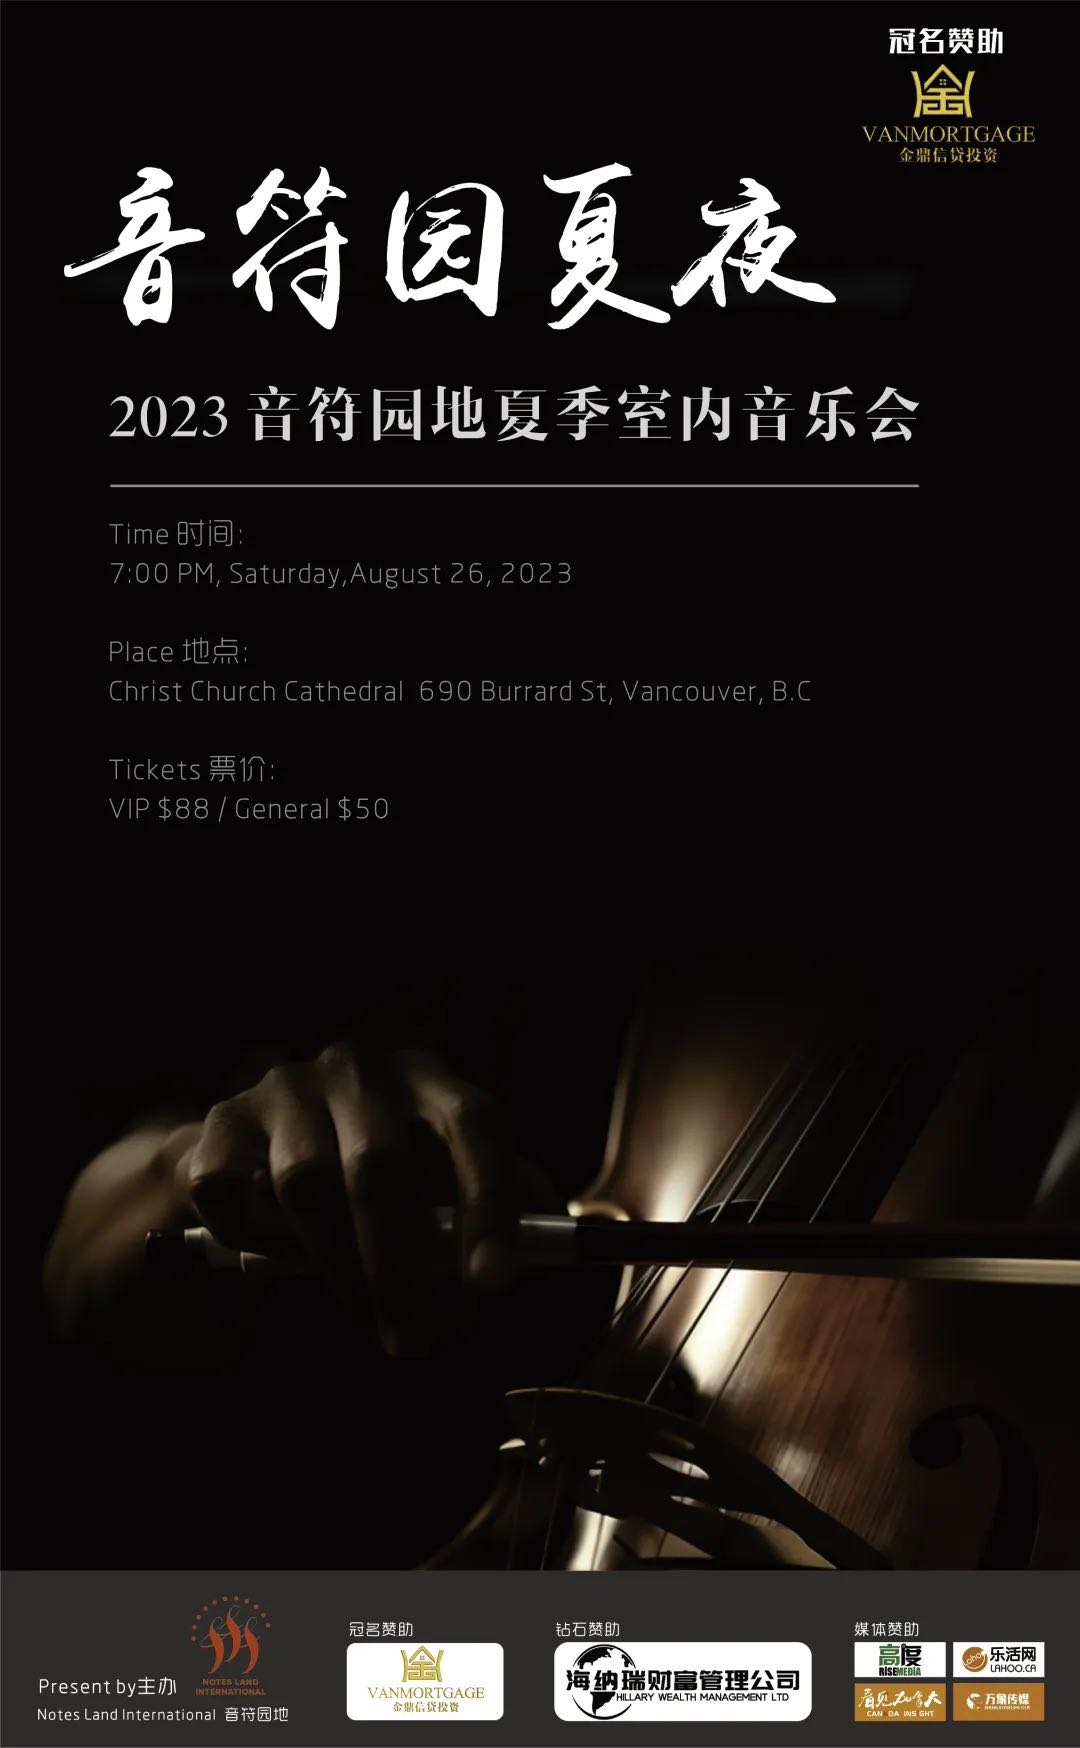 2023音符园地夏季室内音乐会8月26日举行